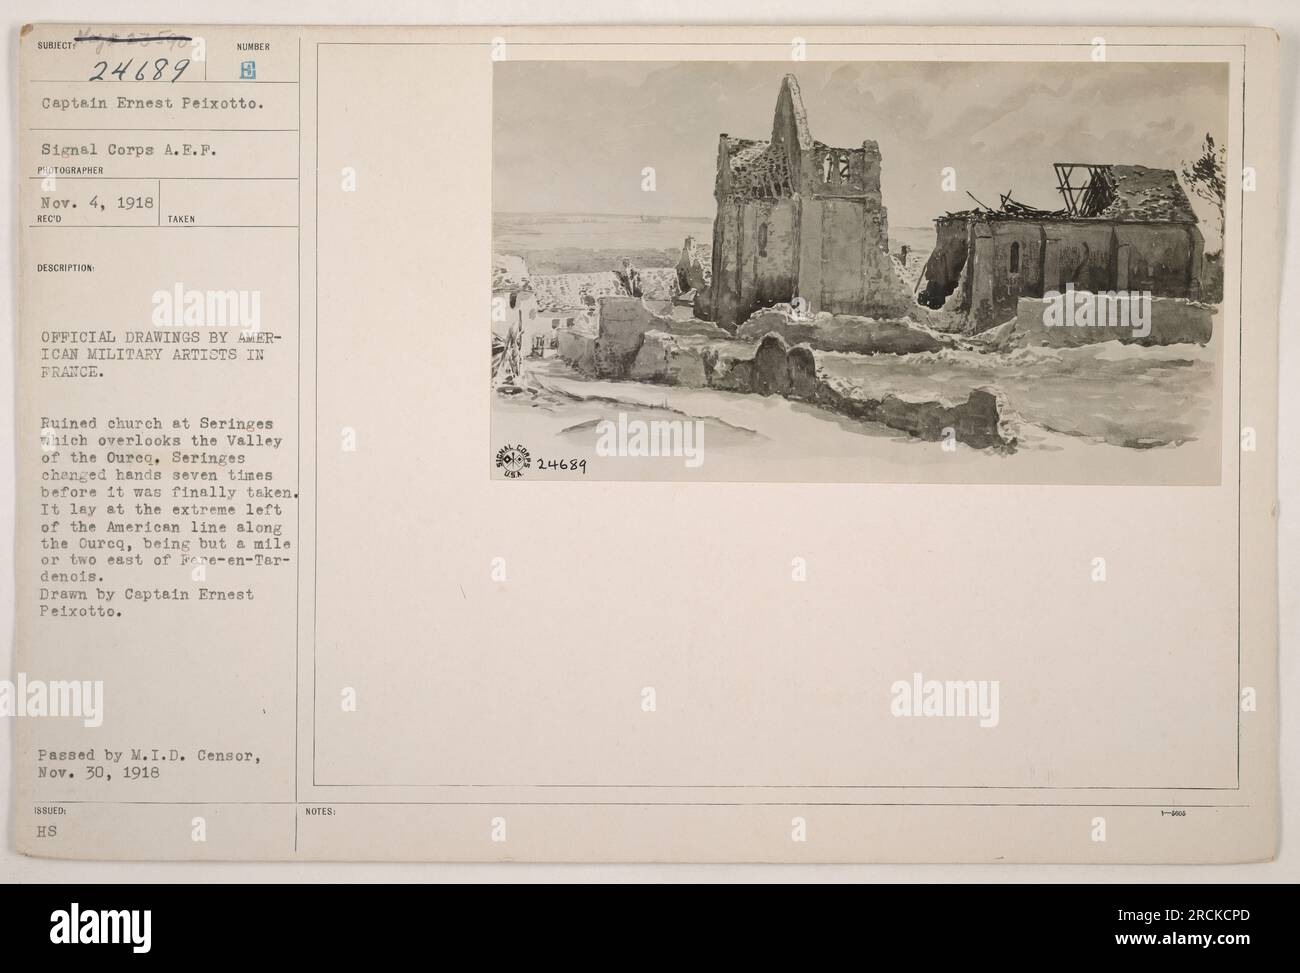 La fotografia del capitano Ernest Peixotto mostra le rovine della chiesa di Seringes in Francia durante la prima guerra mondiale. La chiesa si affacciava sulla valle dell'Oureq e cambiò di mano sette volte prima di essere catturata. Si trovava all'estrema sinistra della linea americana lungo l'Ourcq, a est di Fere-en-Terdenois." Foto Stock